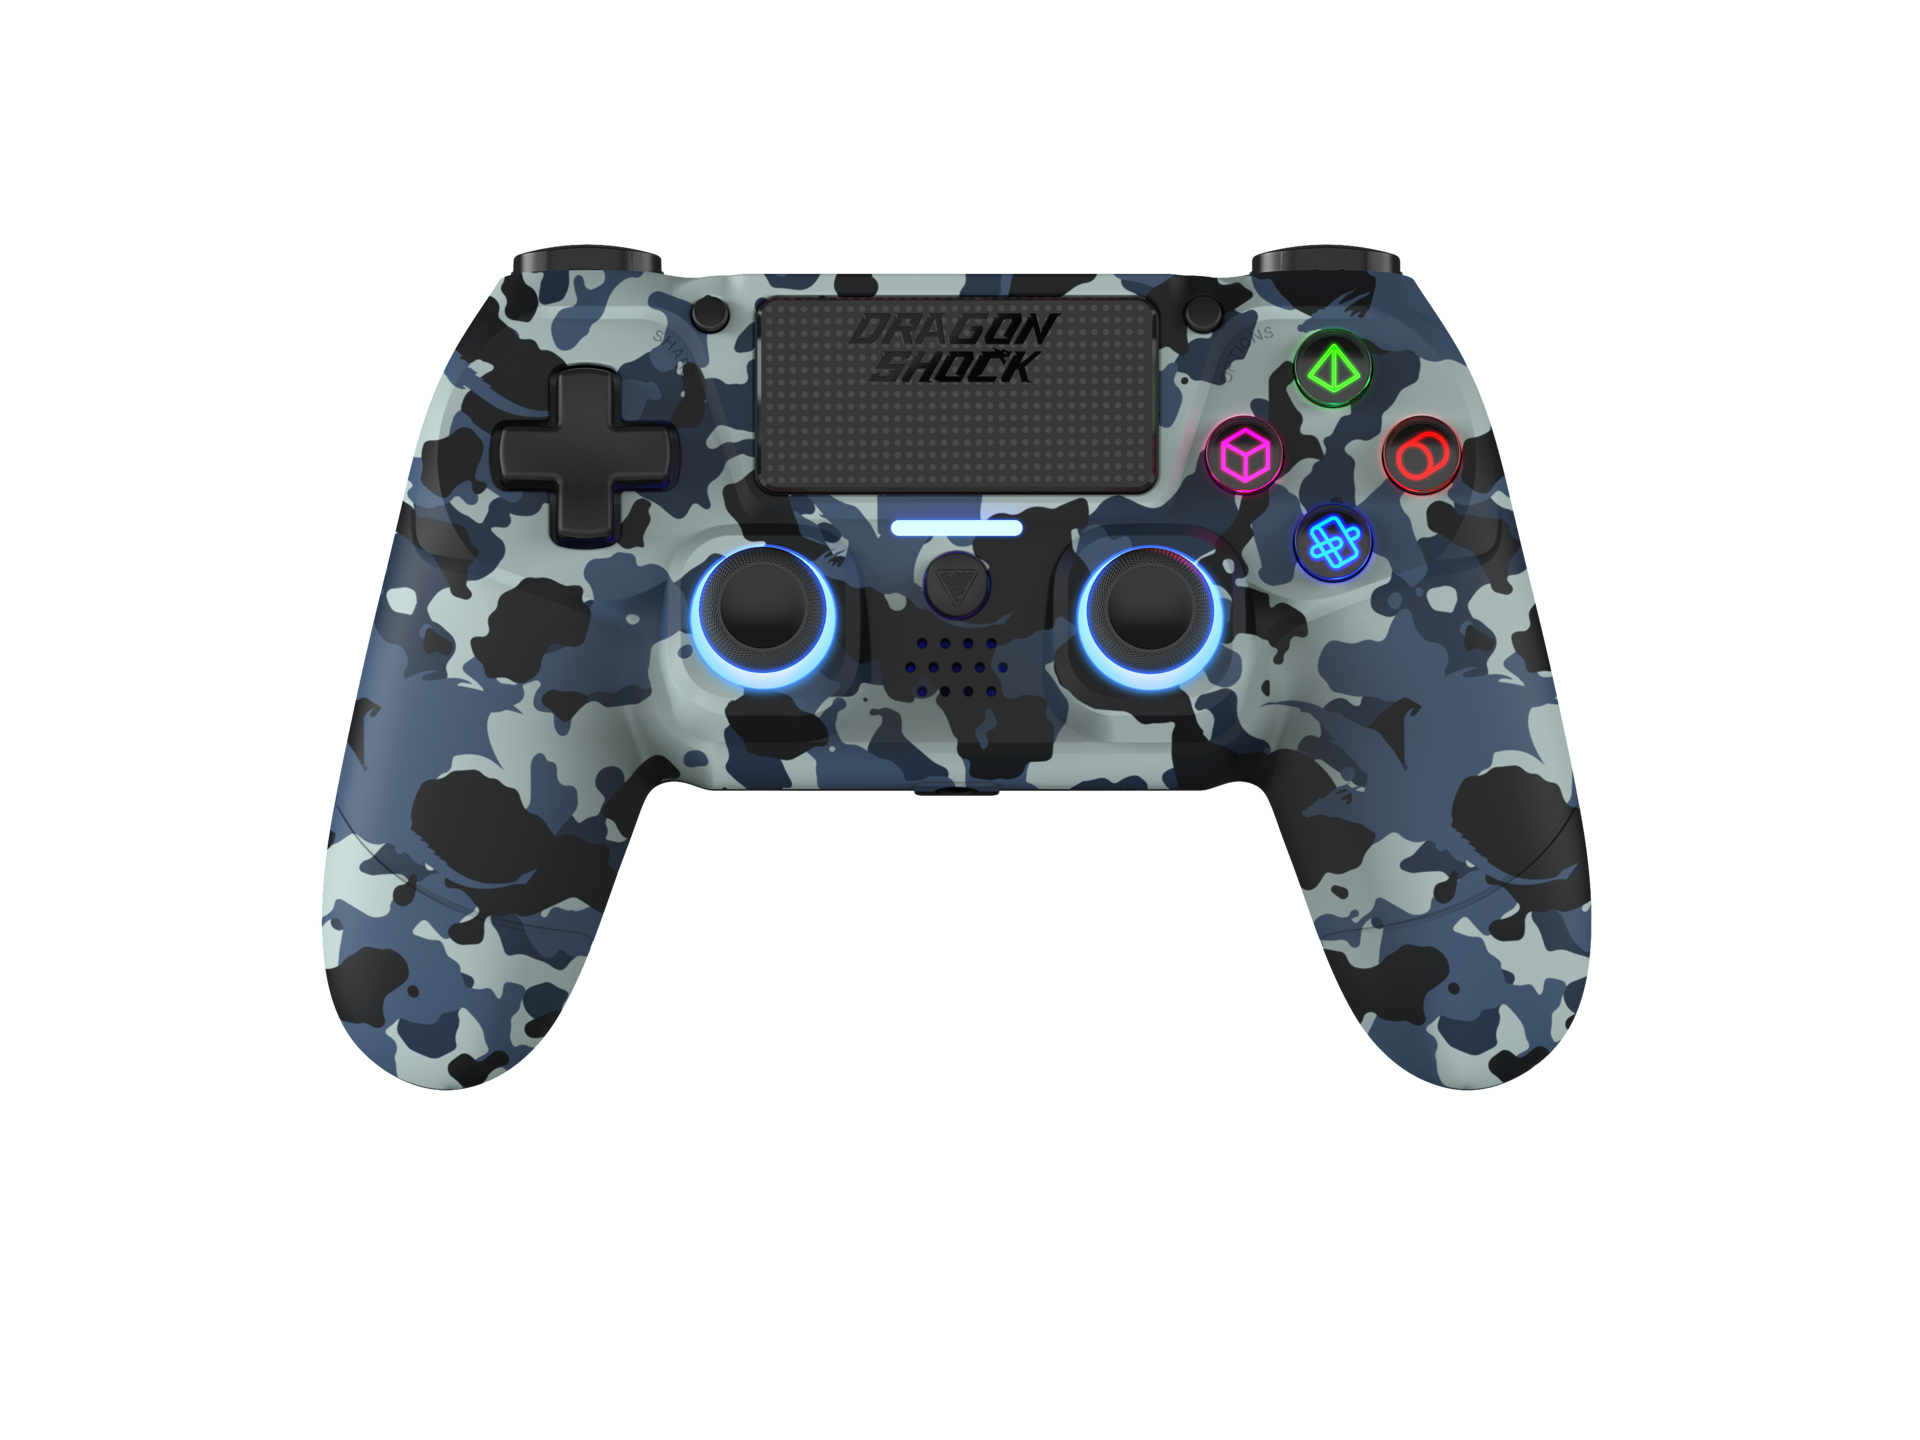 DragonShock - Manette sans fil Bluetooth MIZAR Bleu Camouflage pour PS4, PC et Mobile